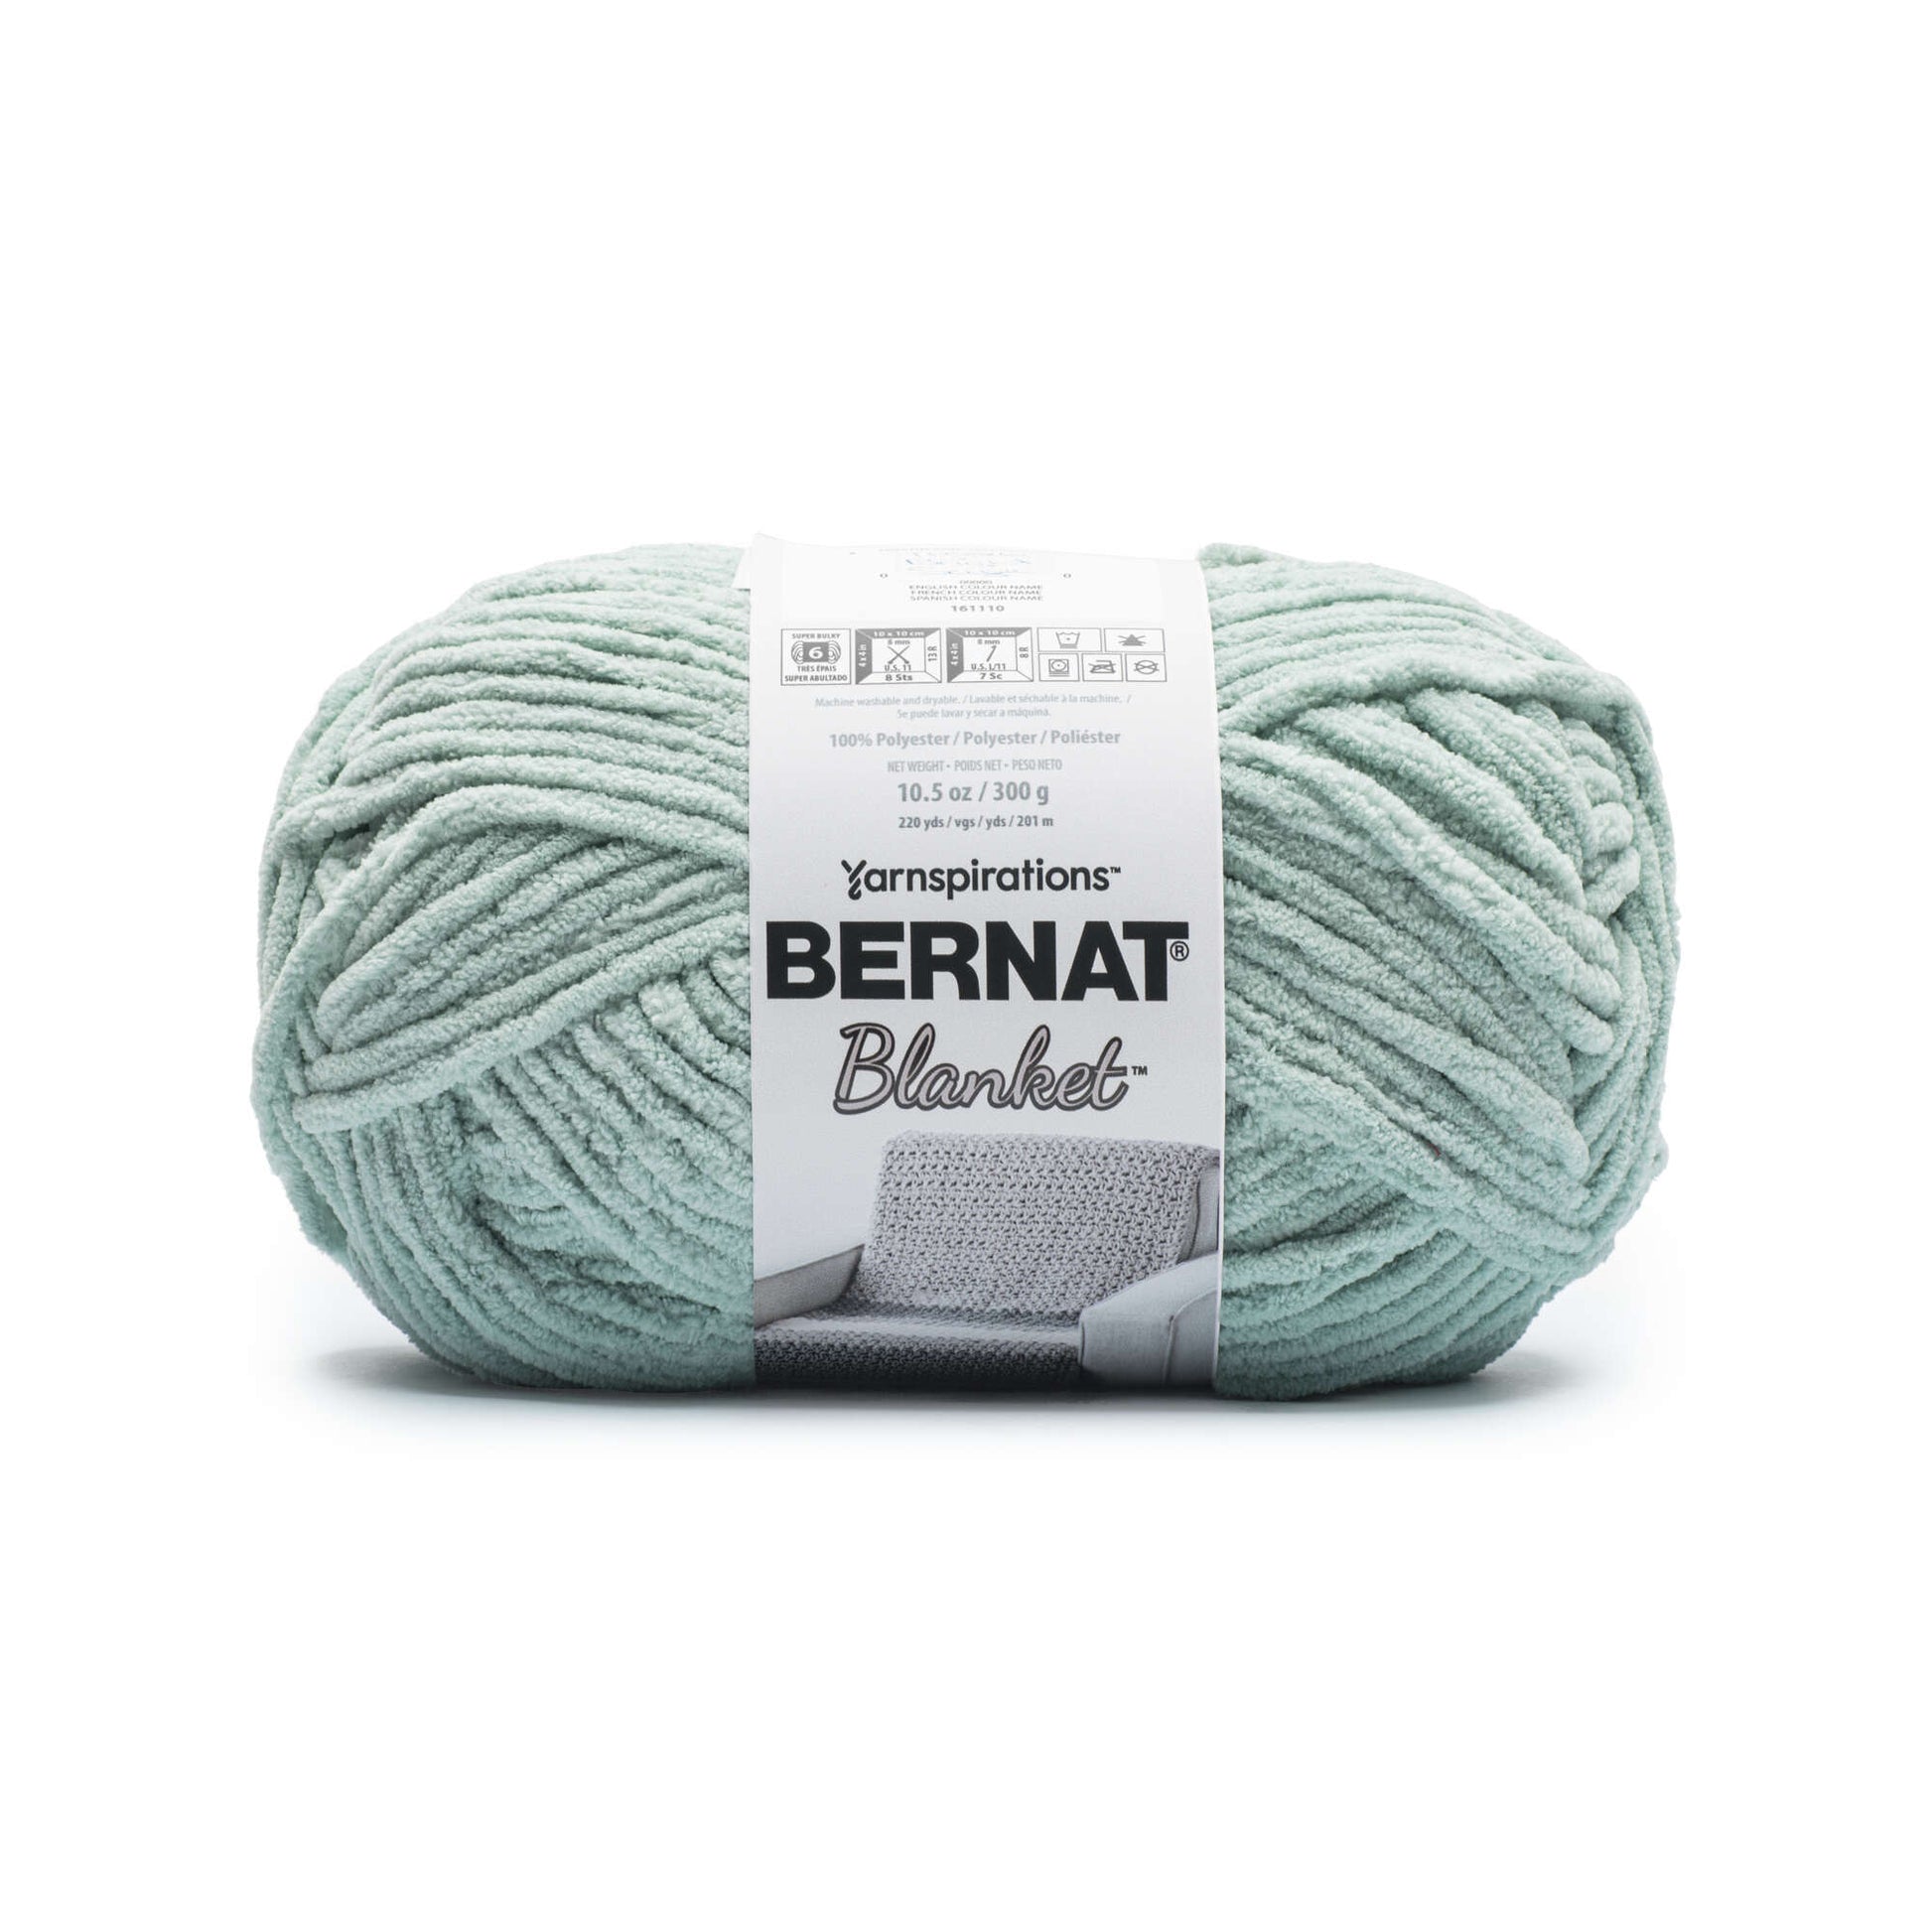 Bernat® Blanket™ #6 Super Bulky Polyester Yarn, Misty Mauve 10.5oz/300g,  220 Yards (4 Pack)